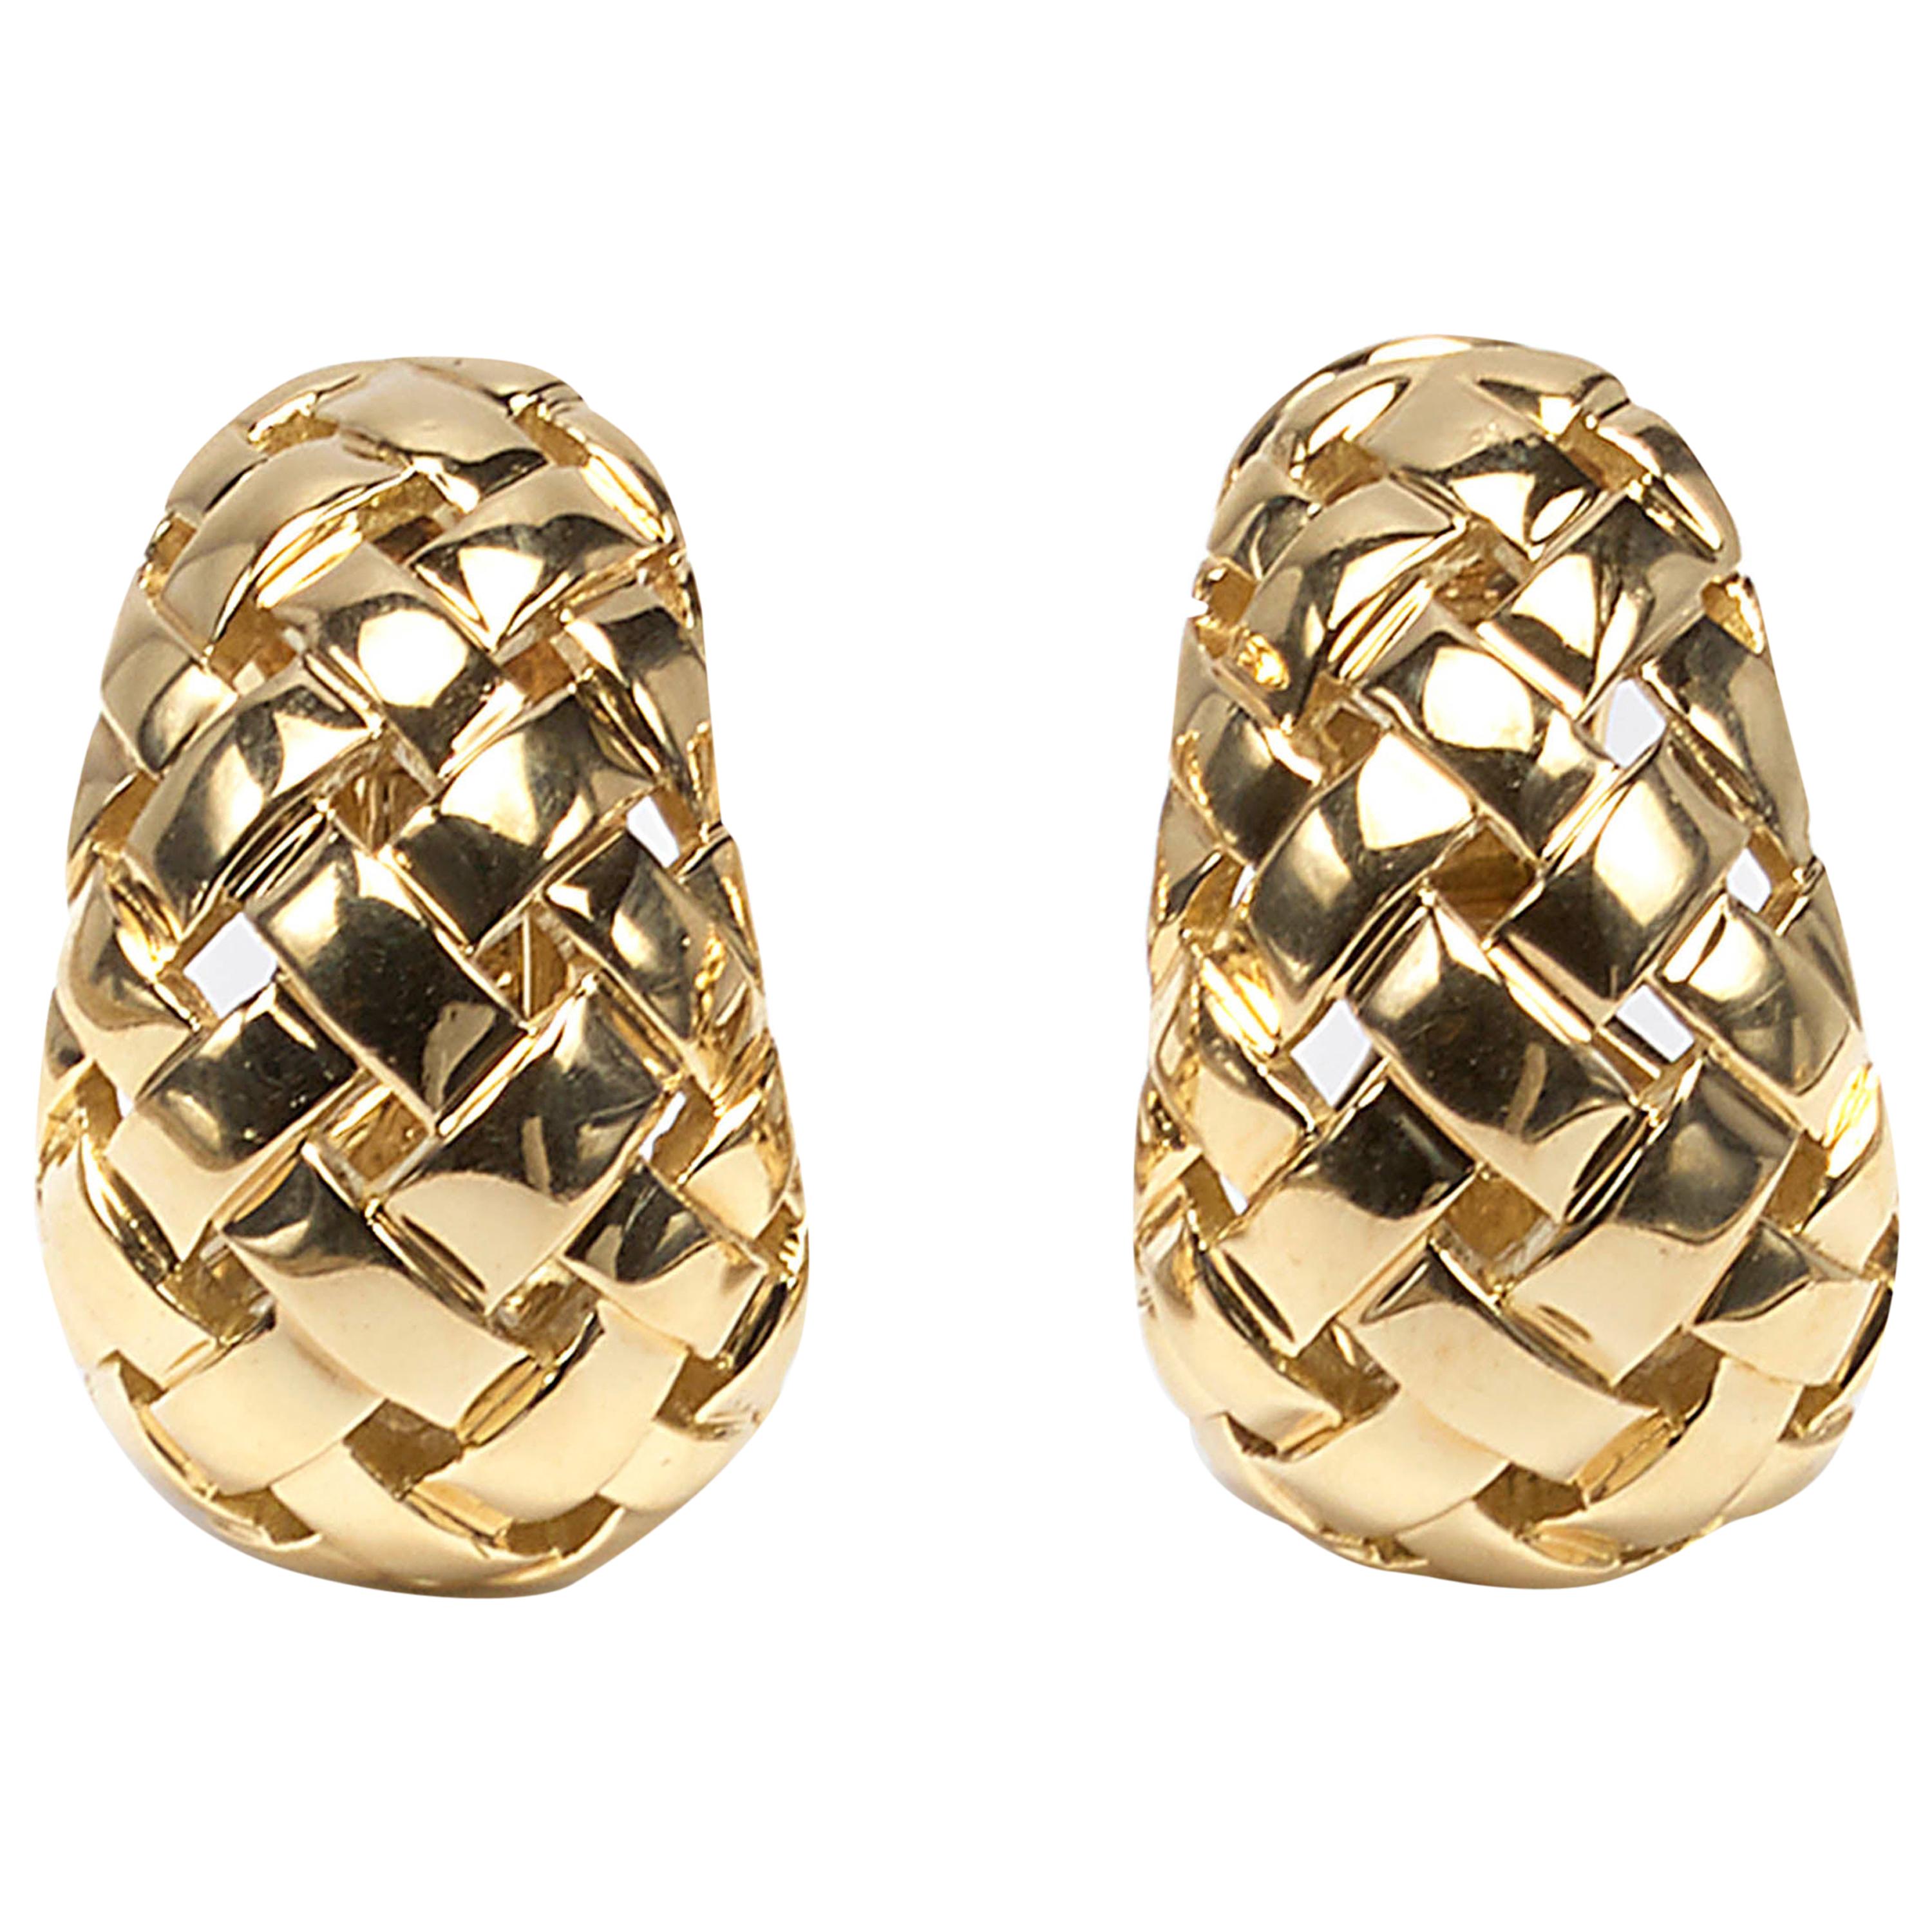 Tiffany & Co. Gold "Vannerie" Earrings